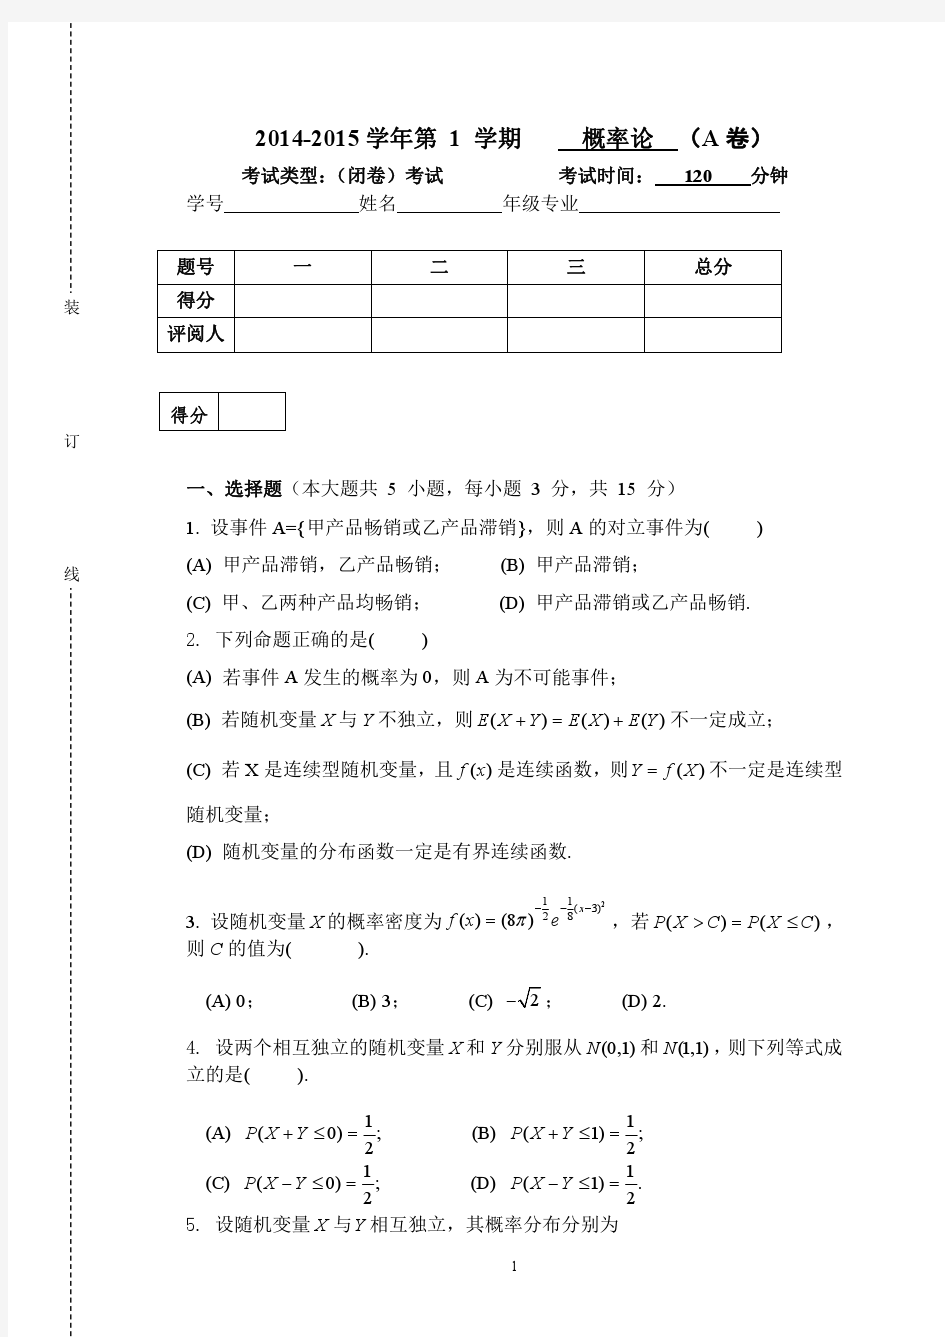 华南农业大学2014-2015《概率论》期末考试试卷及答案